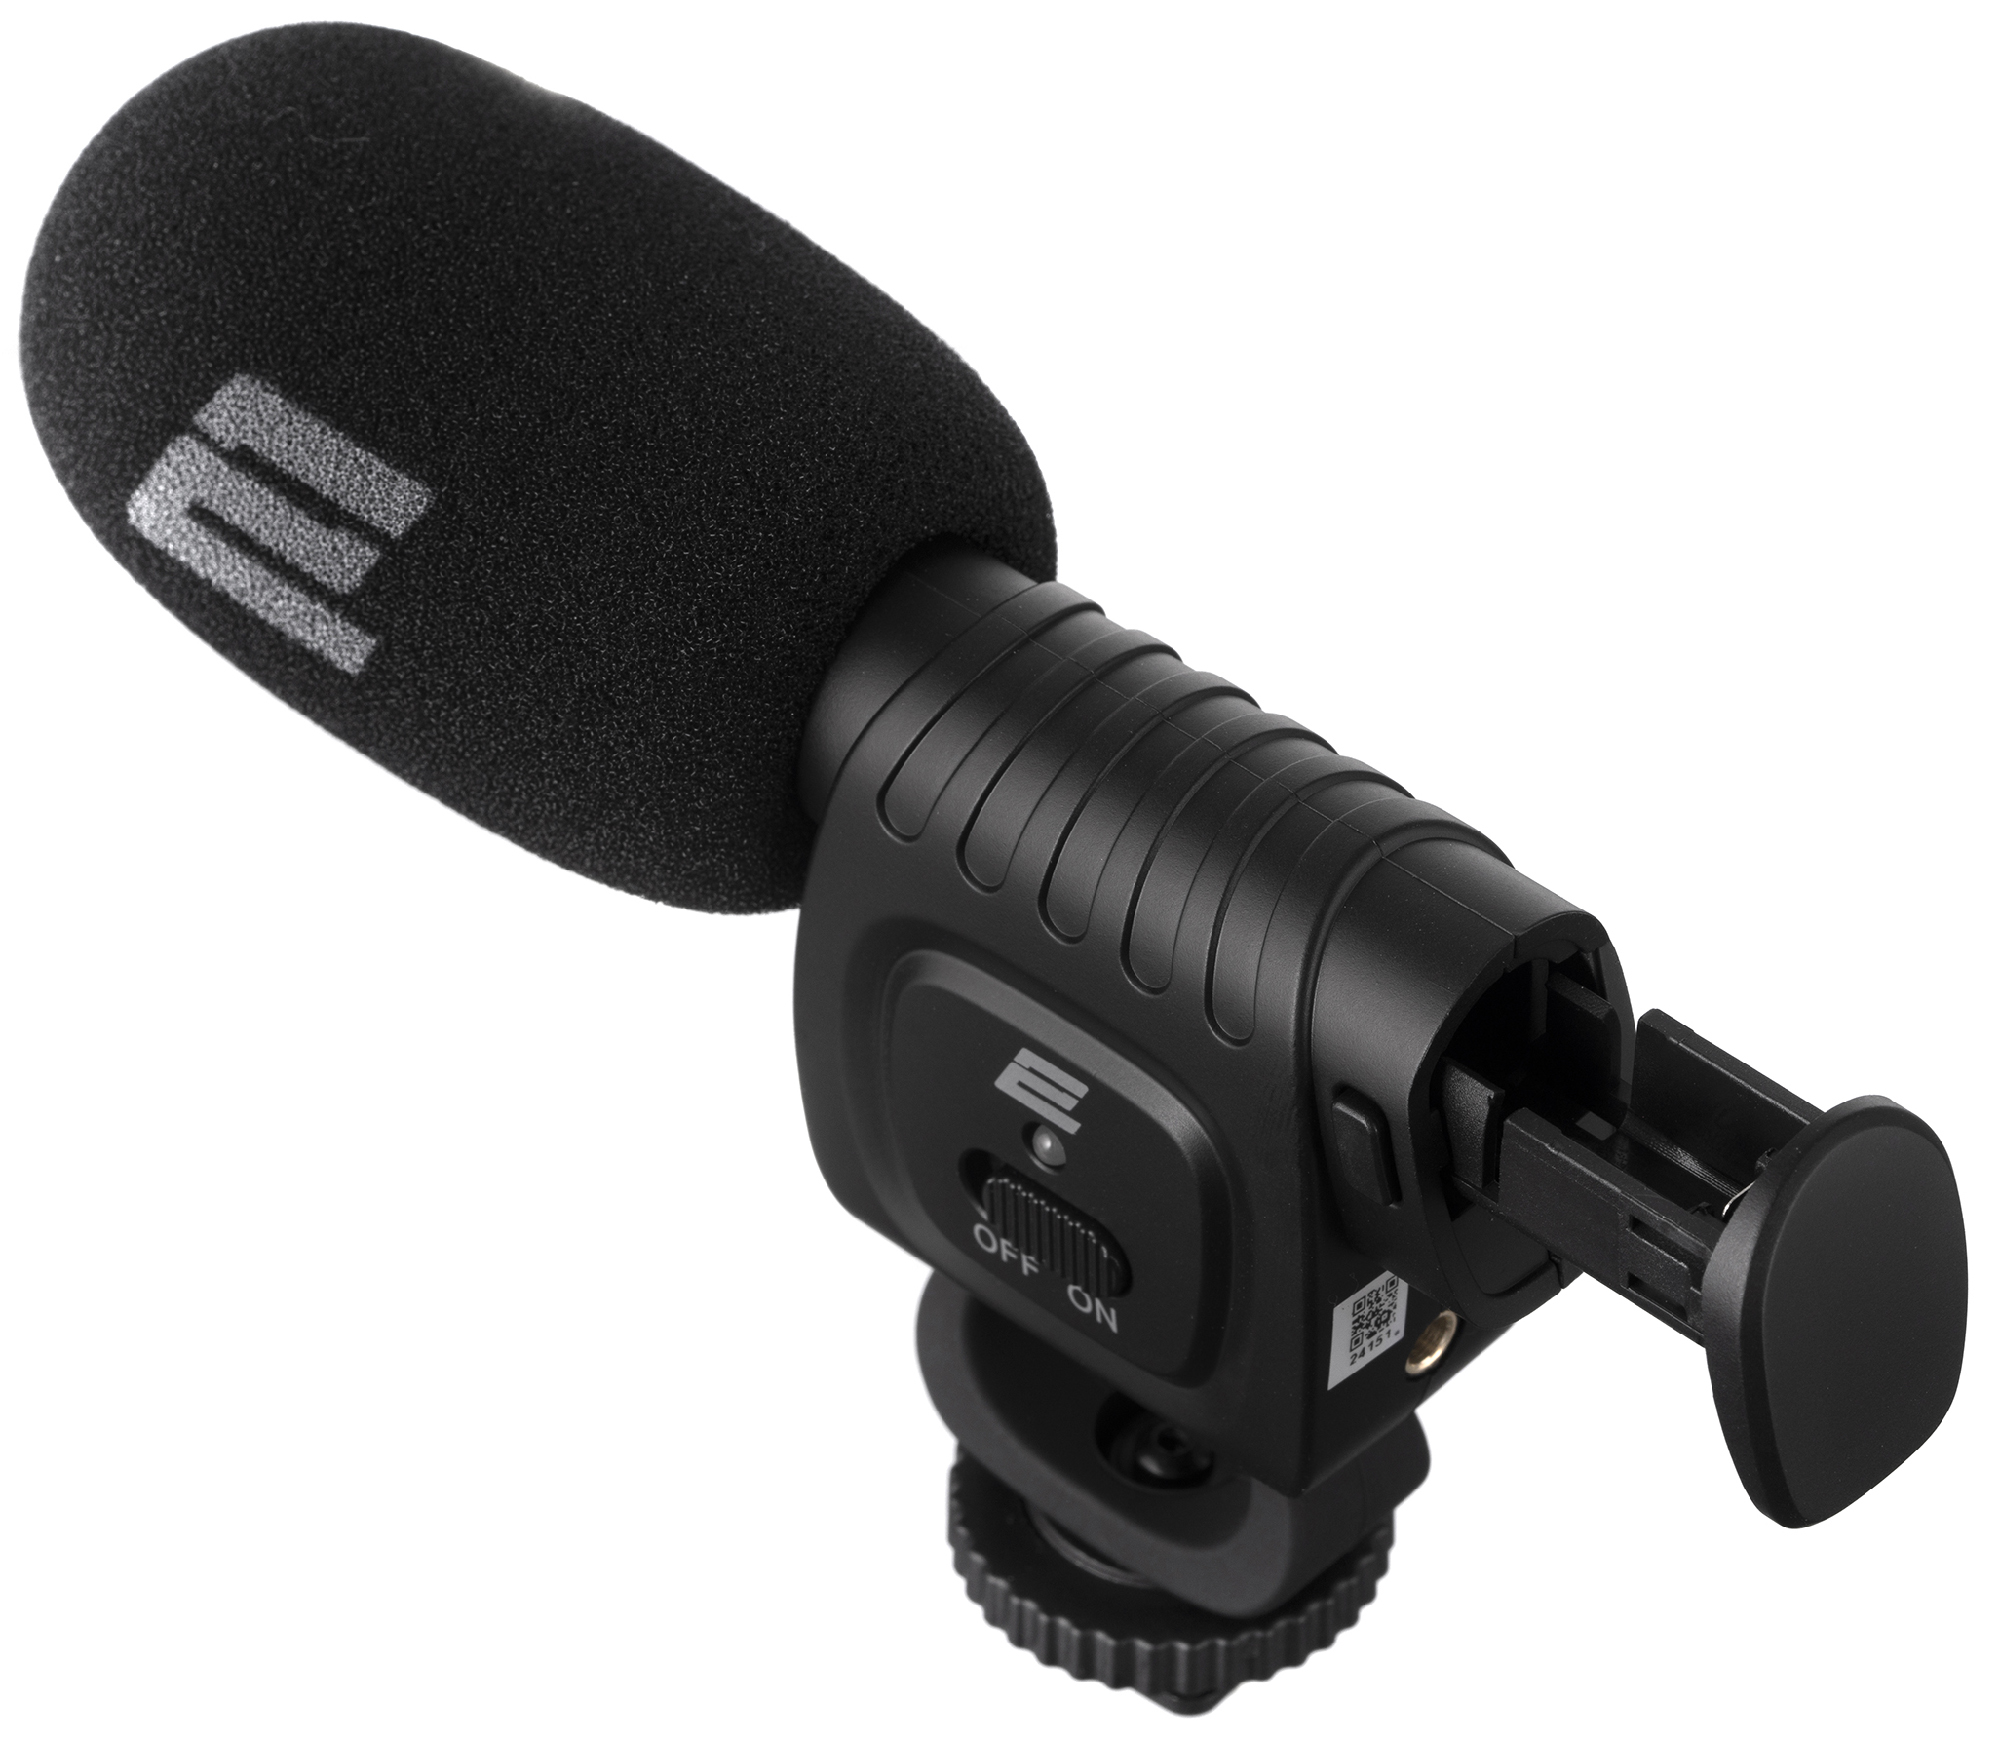 Микрофон 2Е MG020 Shoutgun Pro 3.5mm (2E-MG020) в Киеве